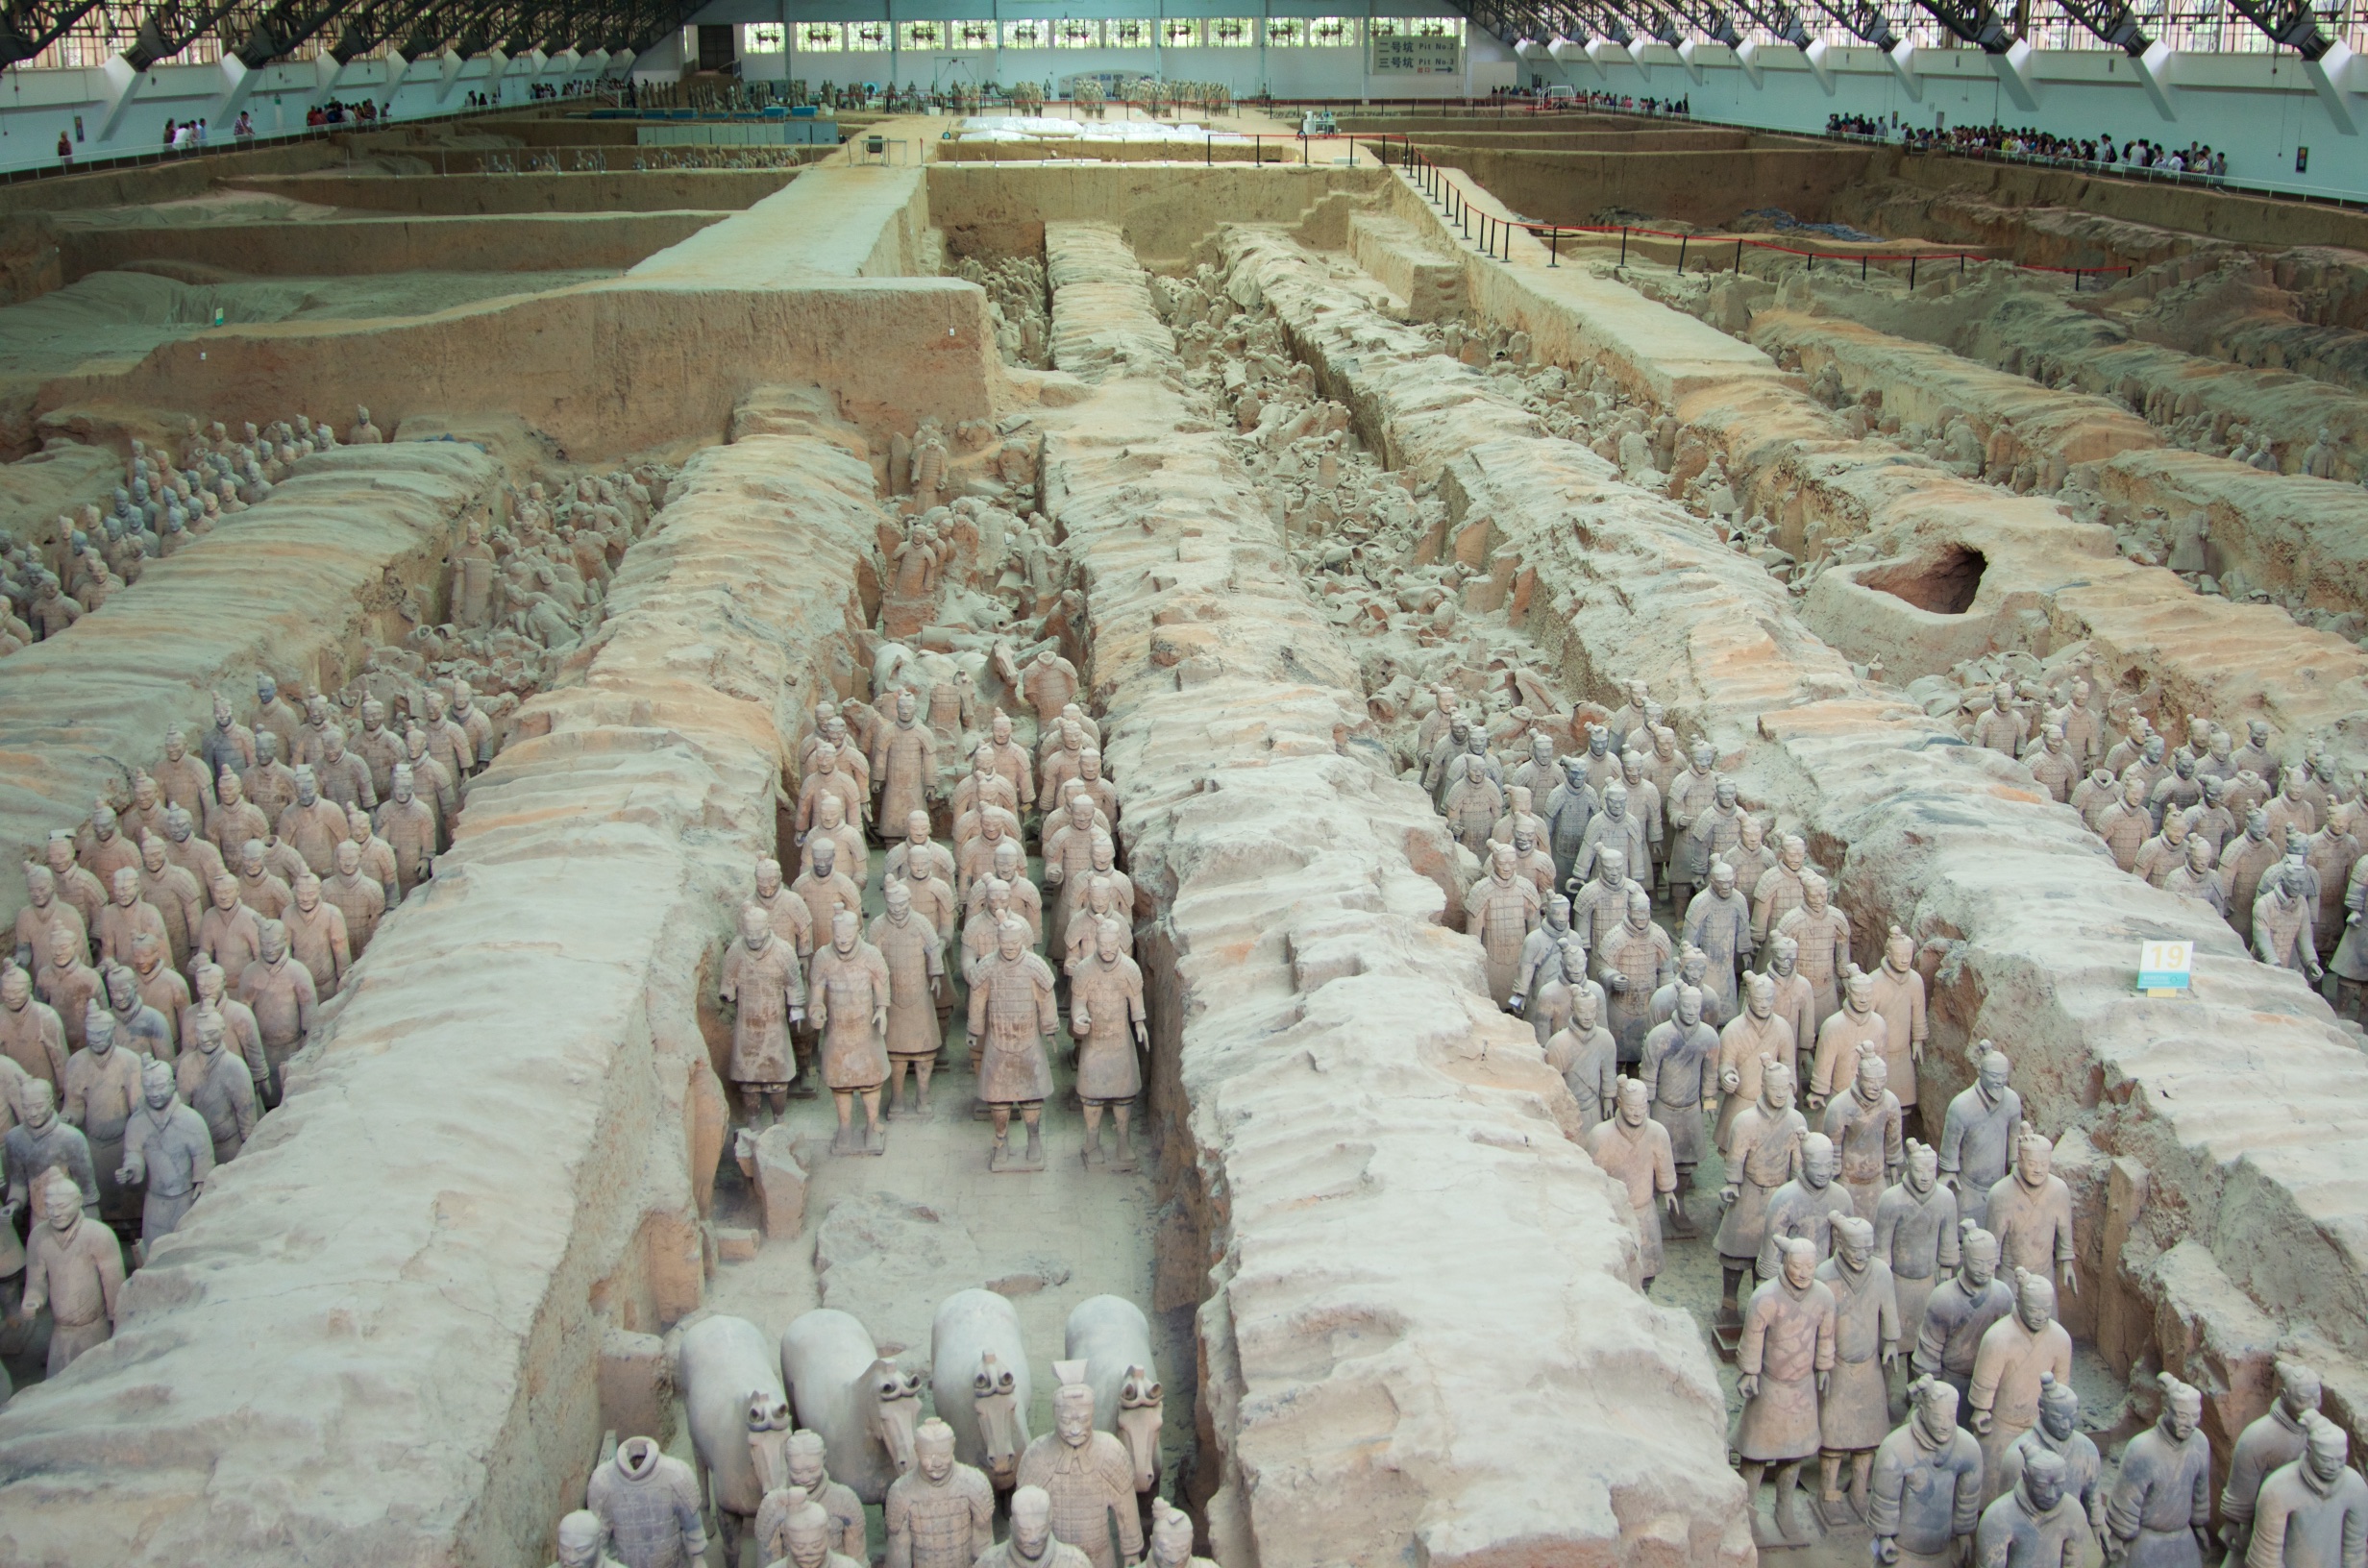  Terracotta Warriors, Lintong, Xi'an, Shaanxi Province 